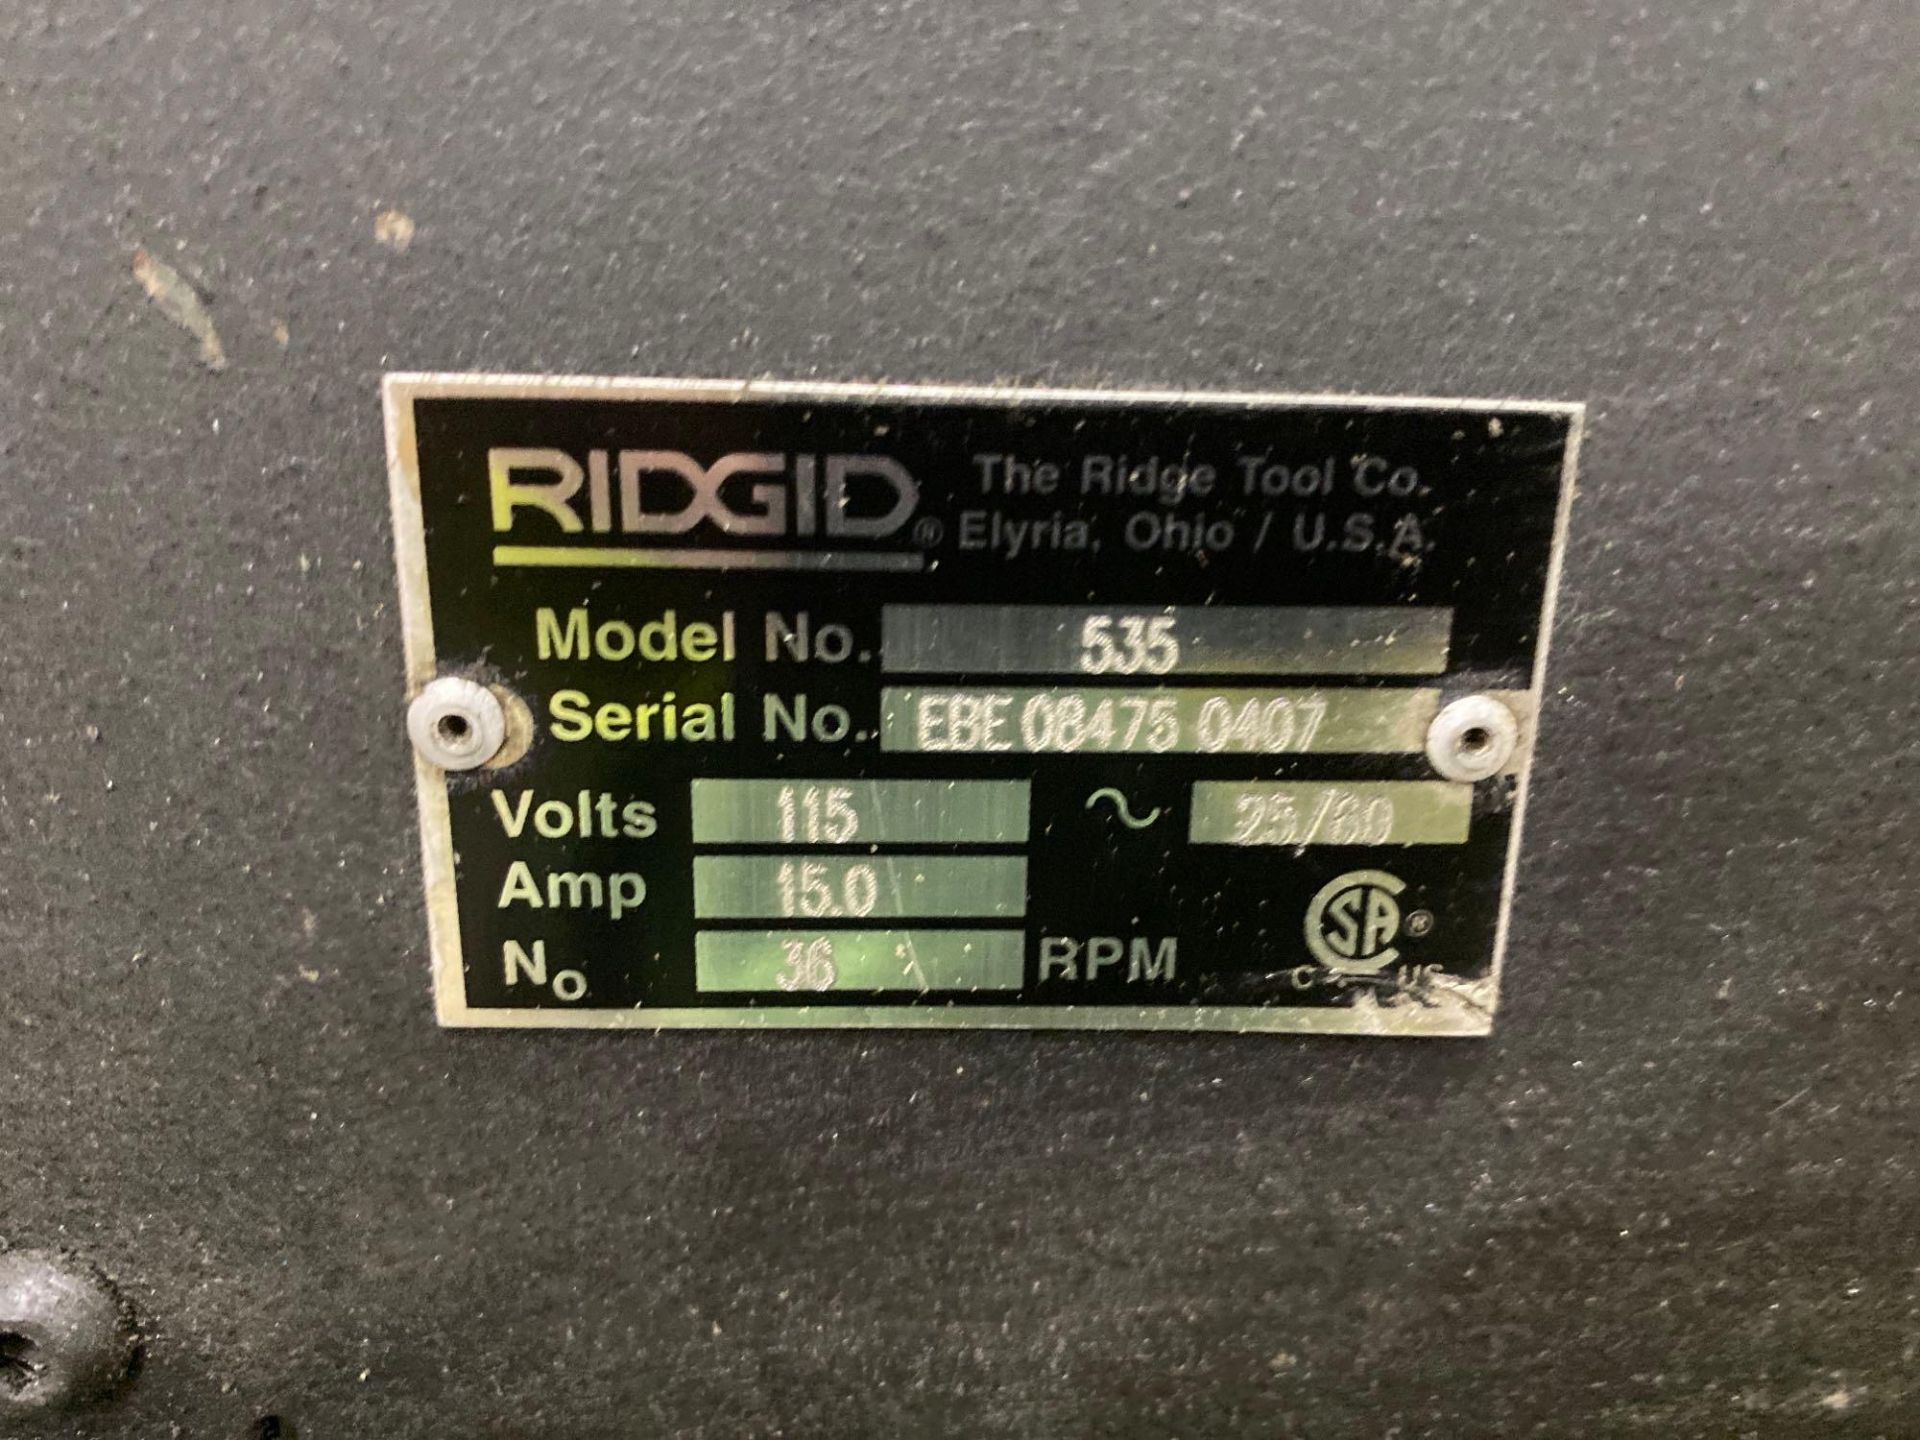 Rigid 535 Pipe Threading Machine - Image 2 of 4